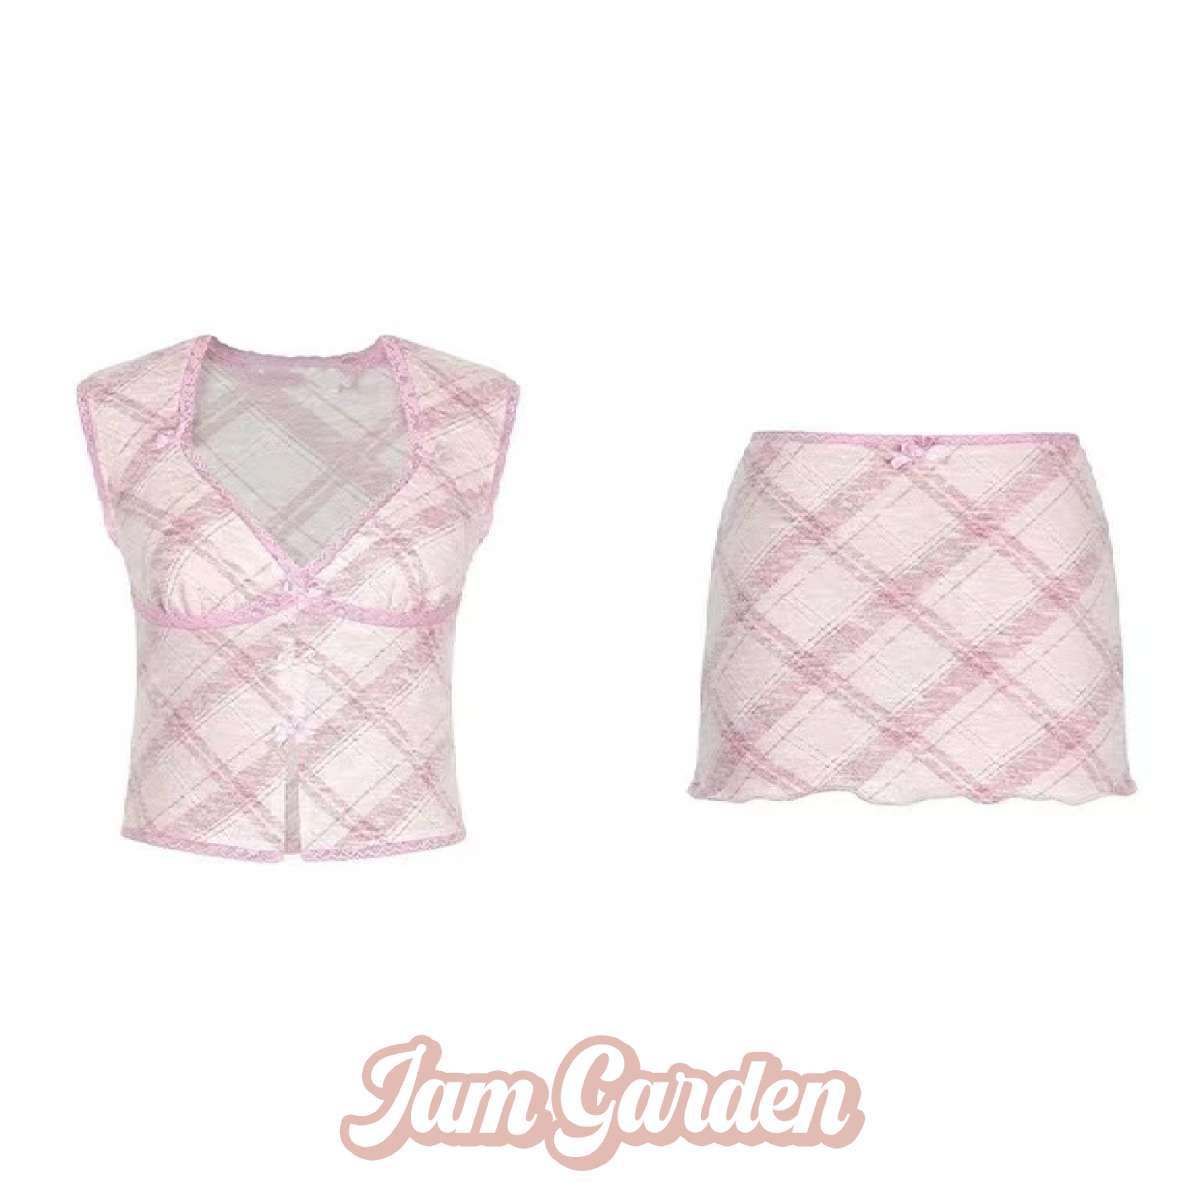 Sweetheart Spice Girl Pink Bow V-neck Short-sleeved Top/Skirt Set - Jam Garden